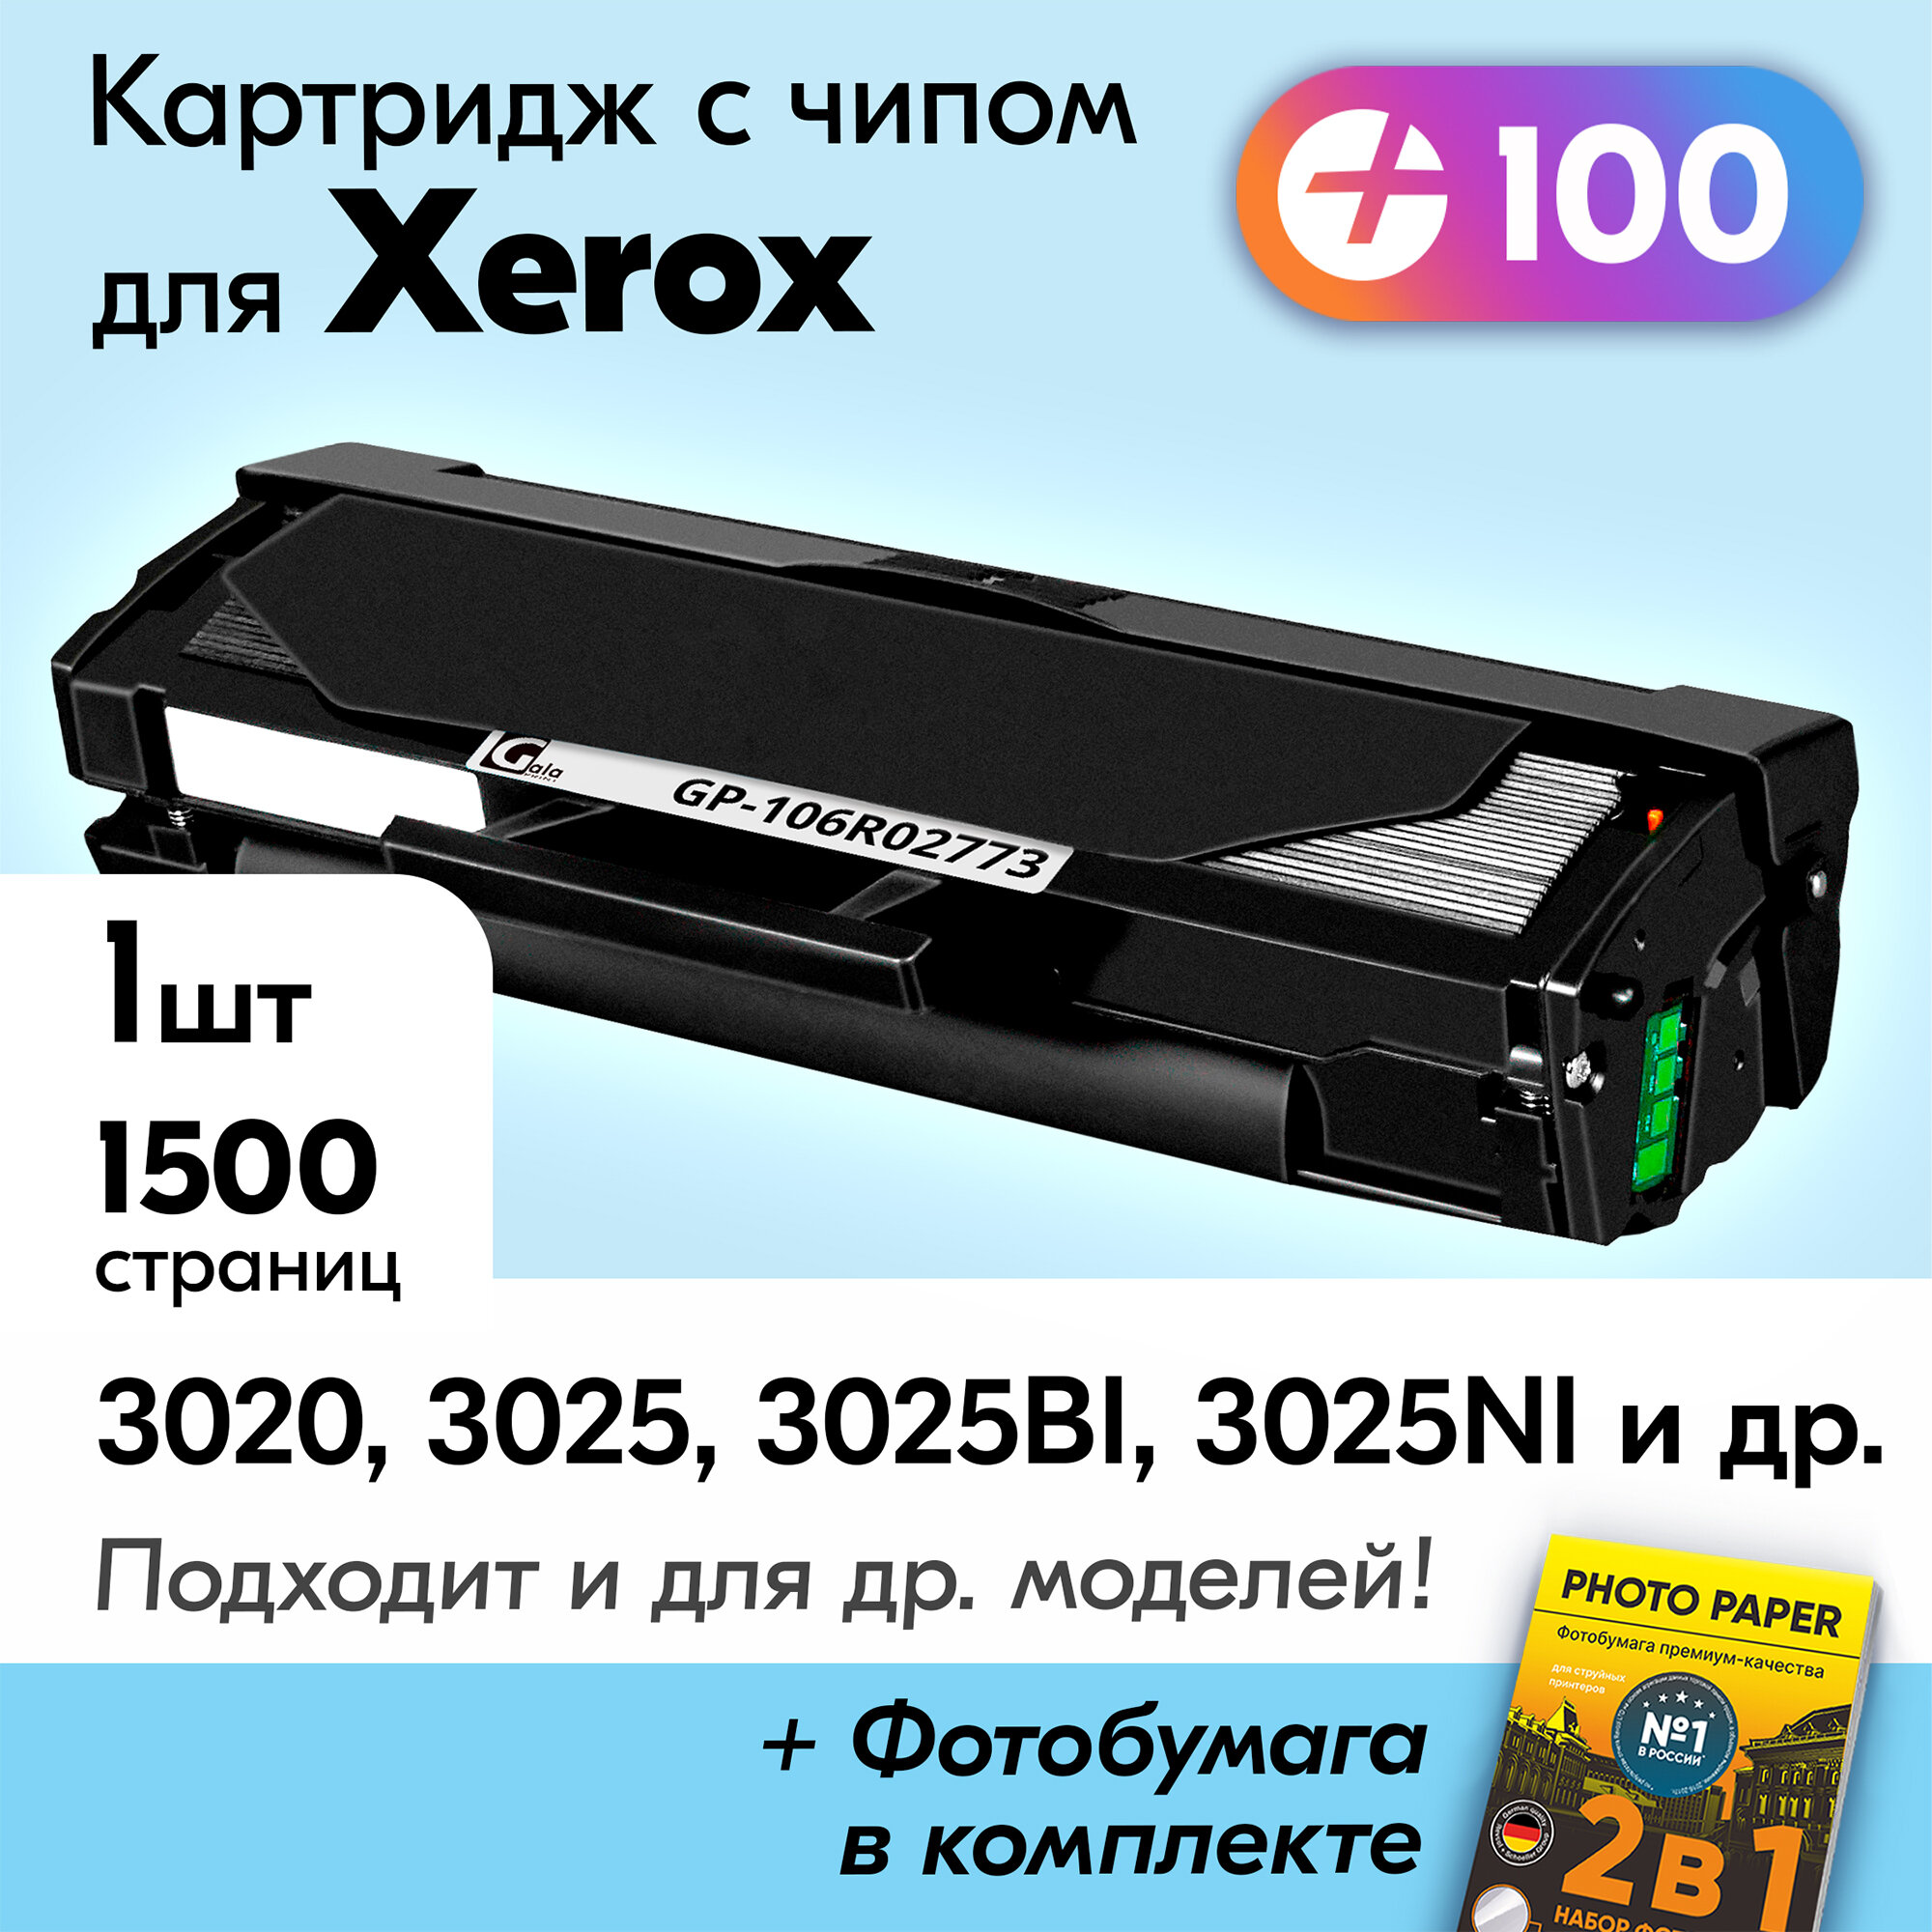 Картридж к Xerox 106R02773, Xerox Phaser 3020, Xerox WorkCentre 3025, 3025BI, 3025NI, 3020BI и др, Ксерокс с краской (тонером) черный новый заправляемый, 1500 к, с чипом